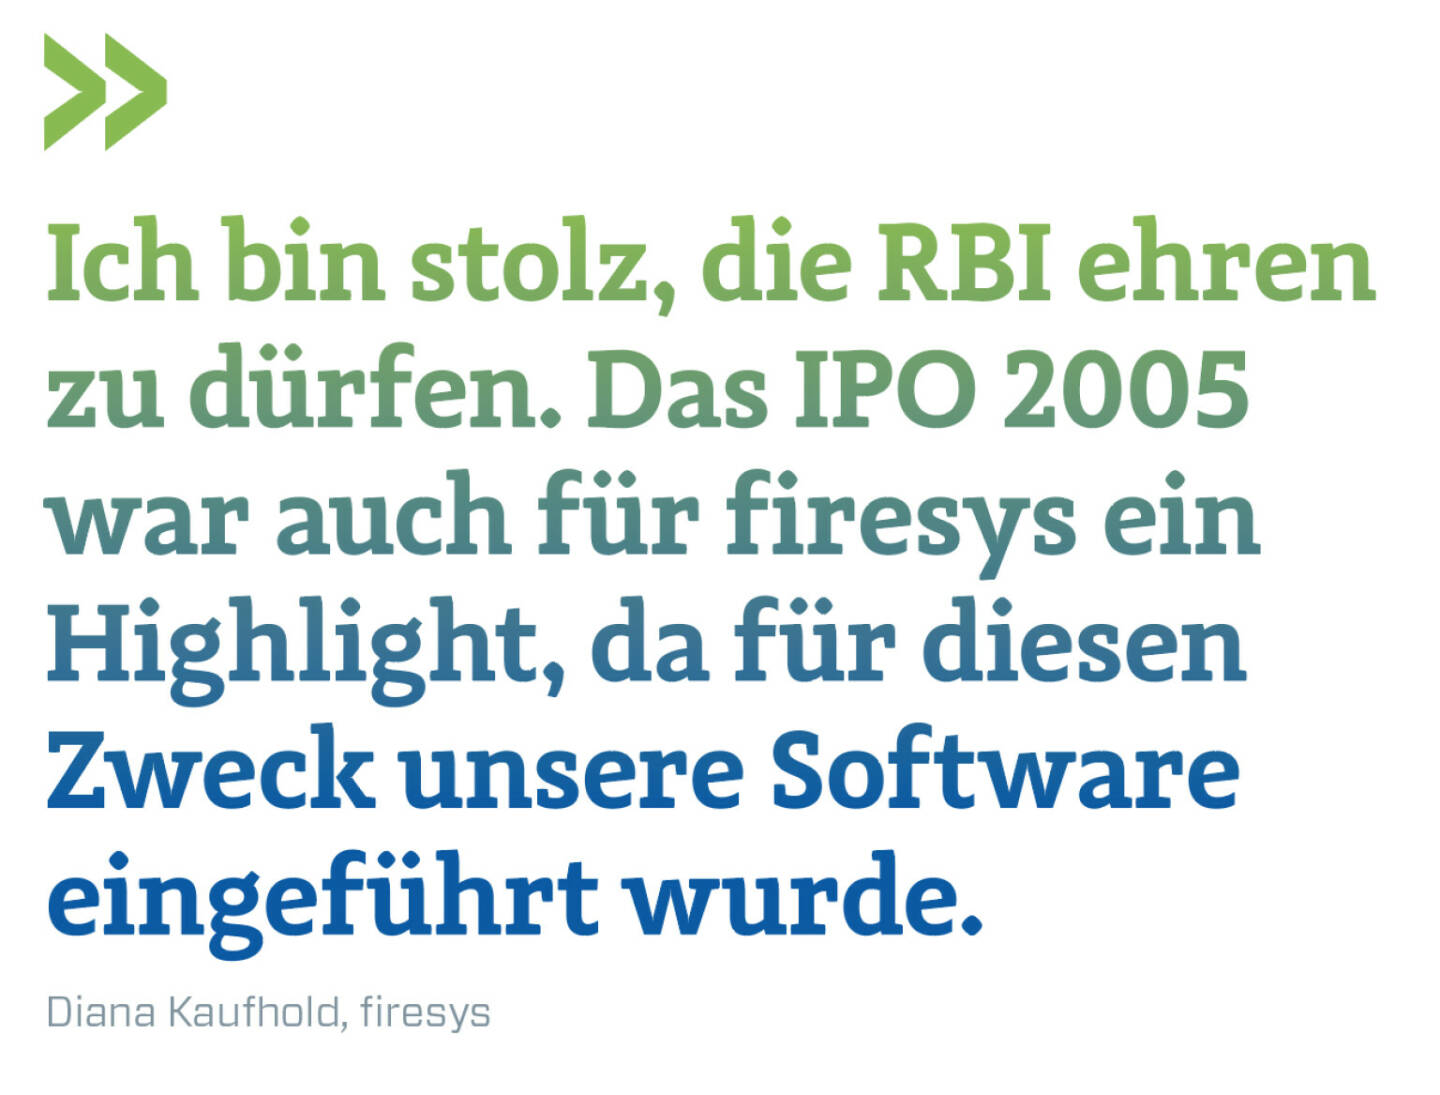 Ich bin stolz, die RBI ehren zu dürfen. Das IPO 2005 war auch für firesys ein Highlight, da für diesen Zweck unsere Software eingeführt wurde.
Diana Kaufhold, firesys